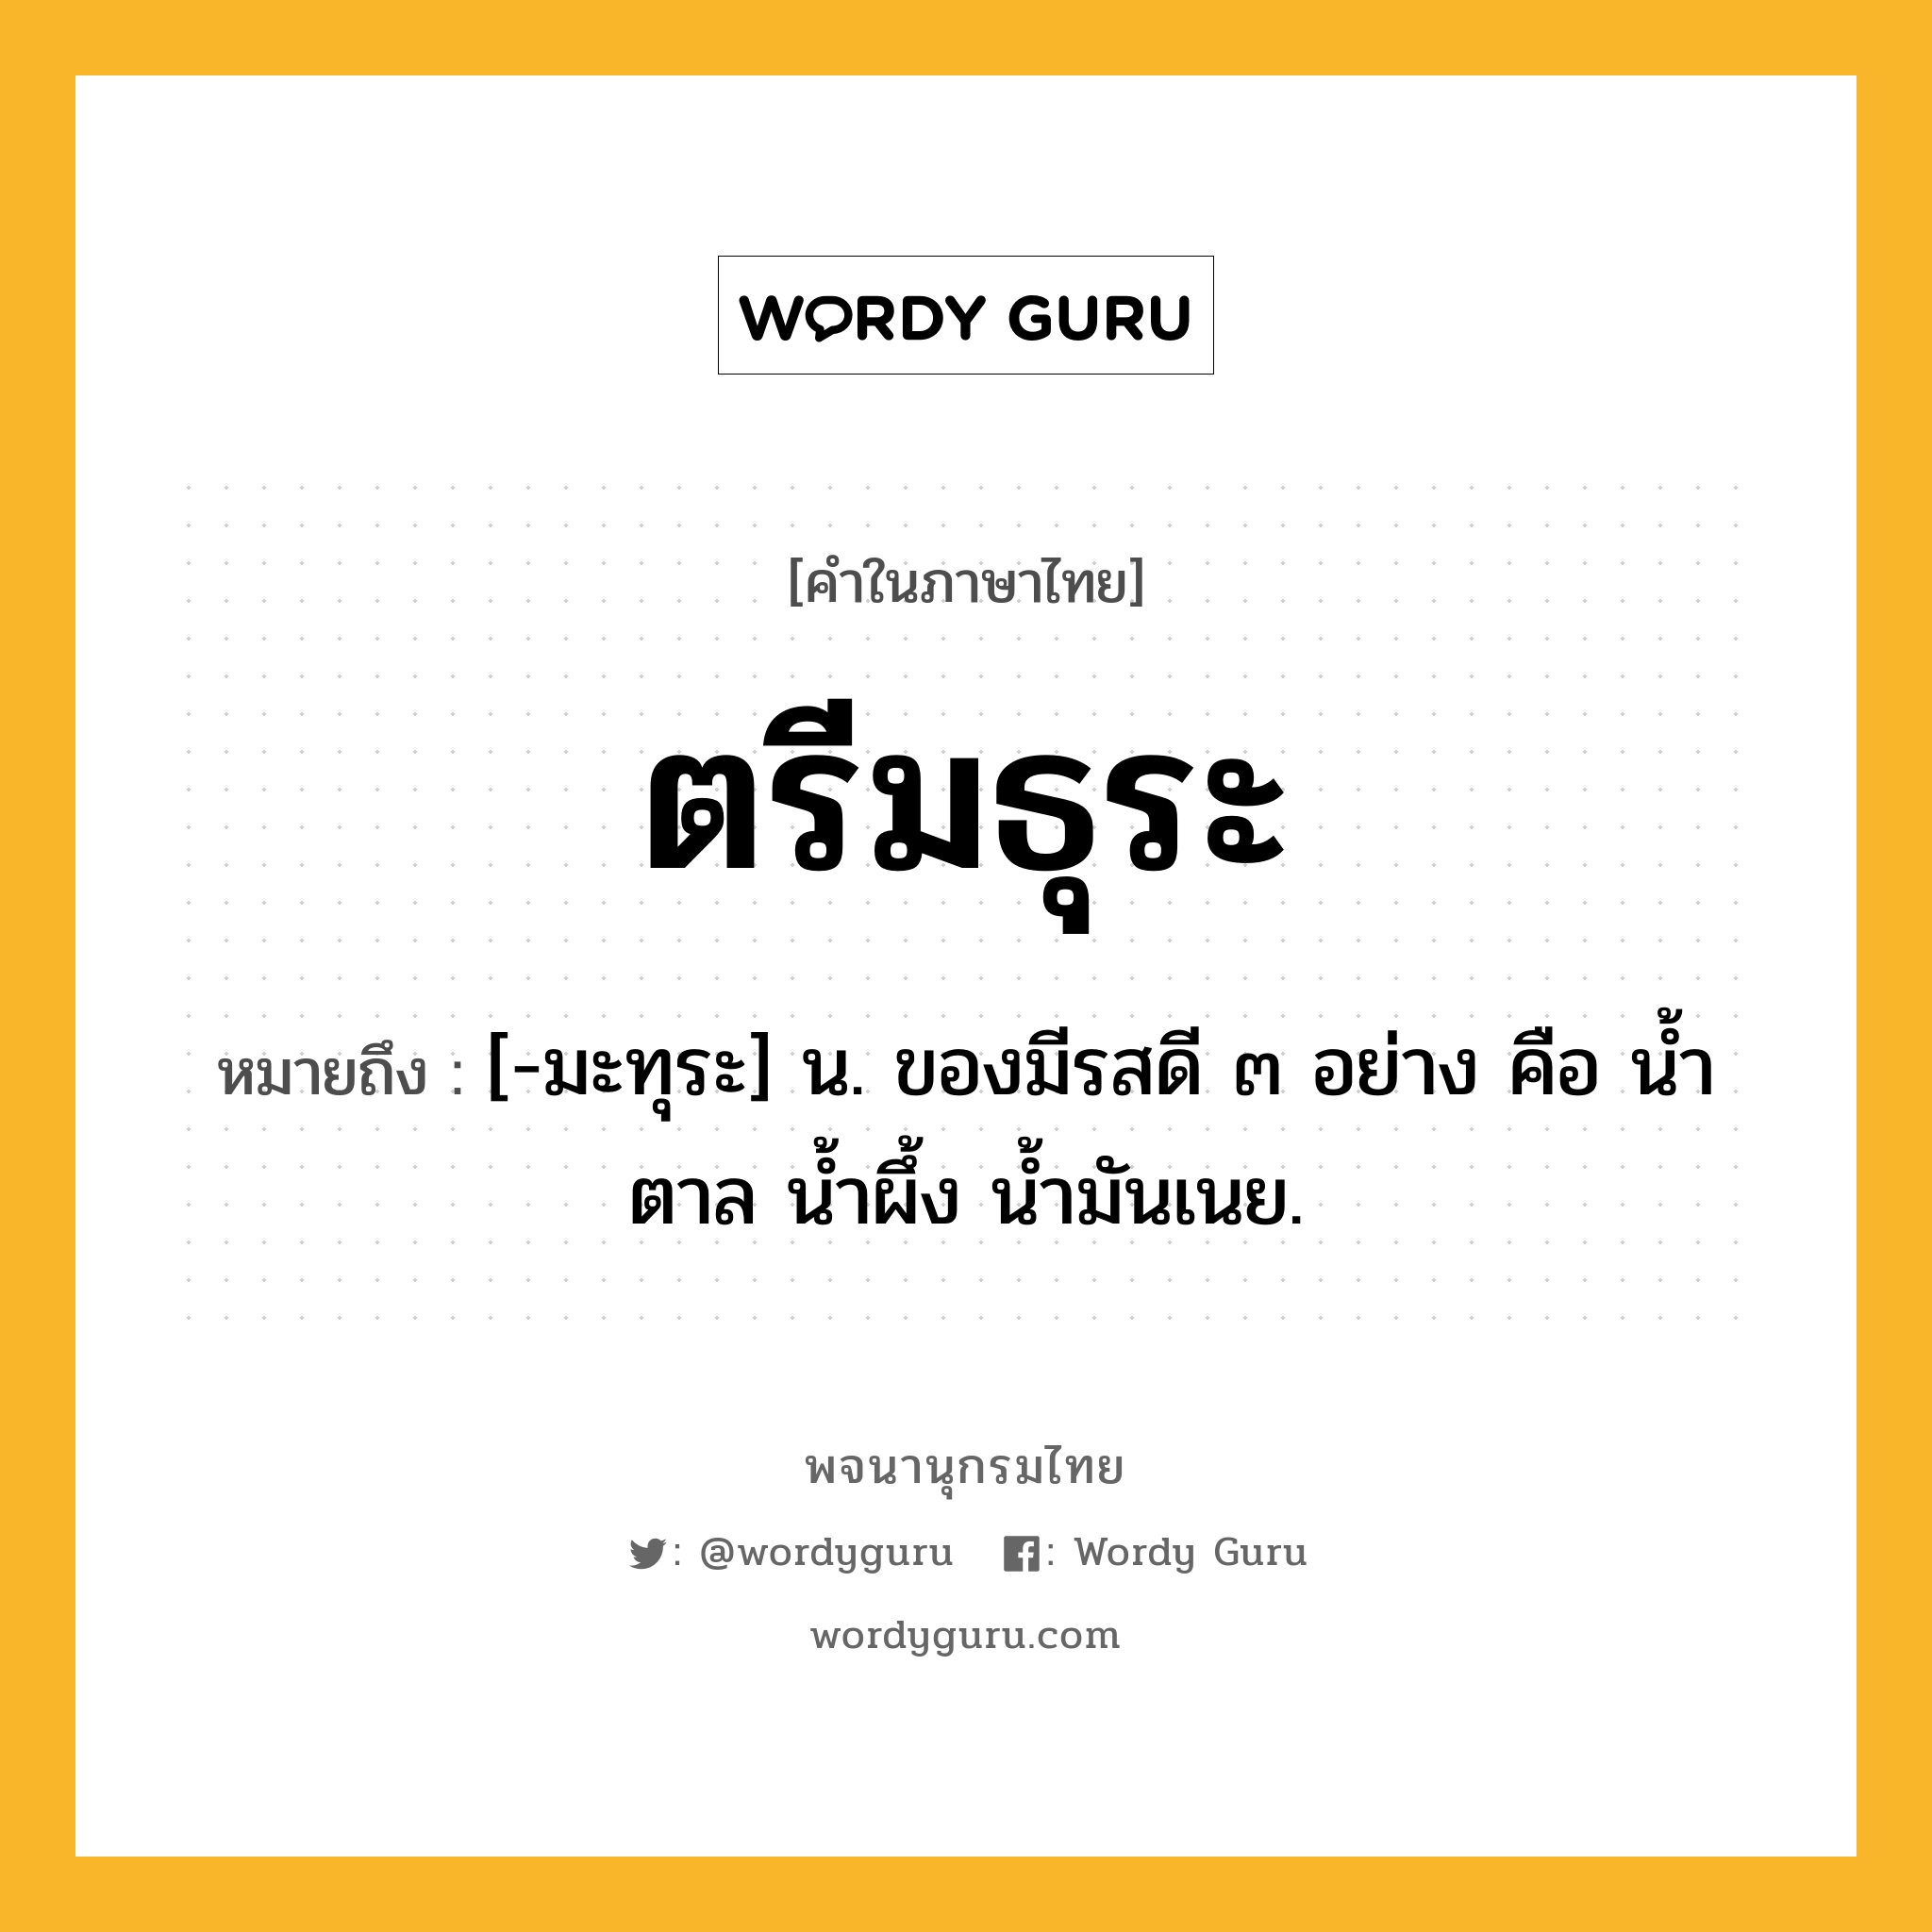 ตรีมธุระ หมายถึงอะไร?, คำในภาษาไทย ตรีมธุระ หมายถึง [-มะทุระ] น. ของมีรสดี ๓ อย่าง คือ นํ้าตาล นํ้าผึ้ง นํ้ามันเนย.